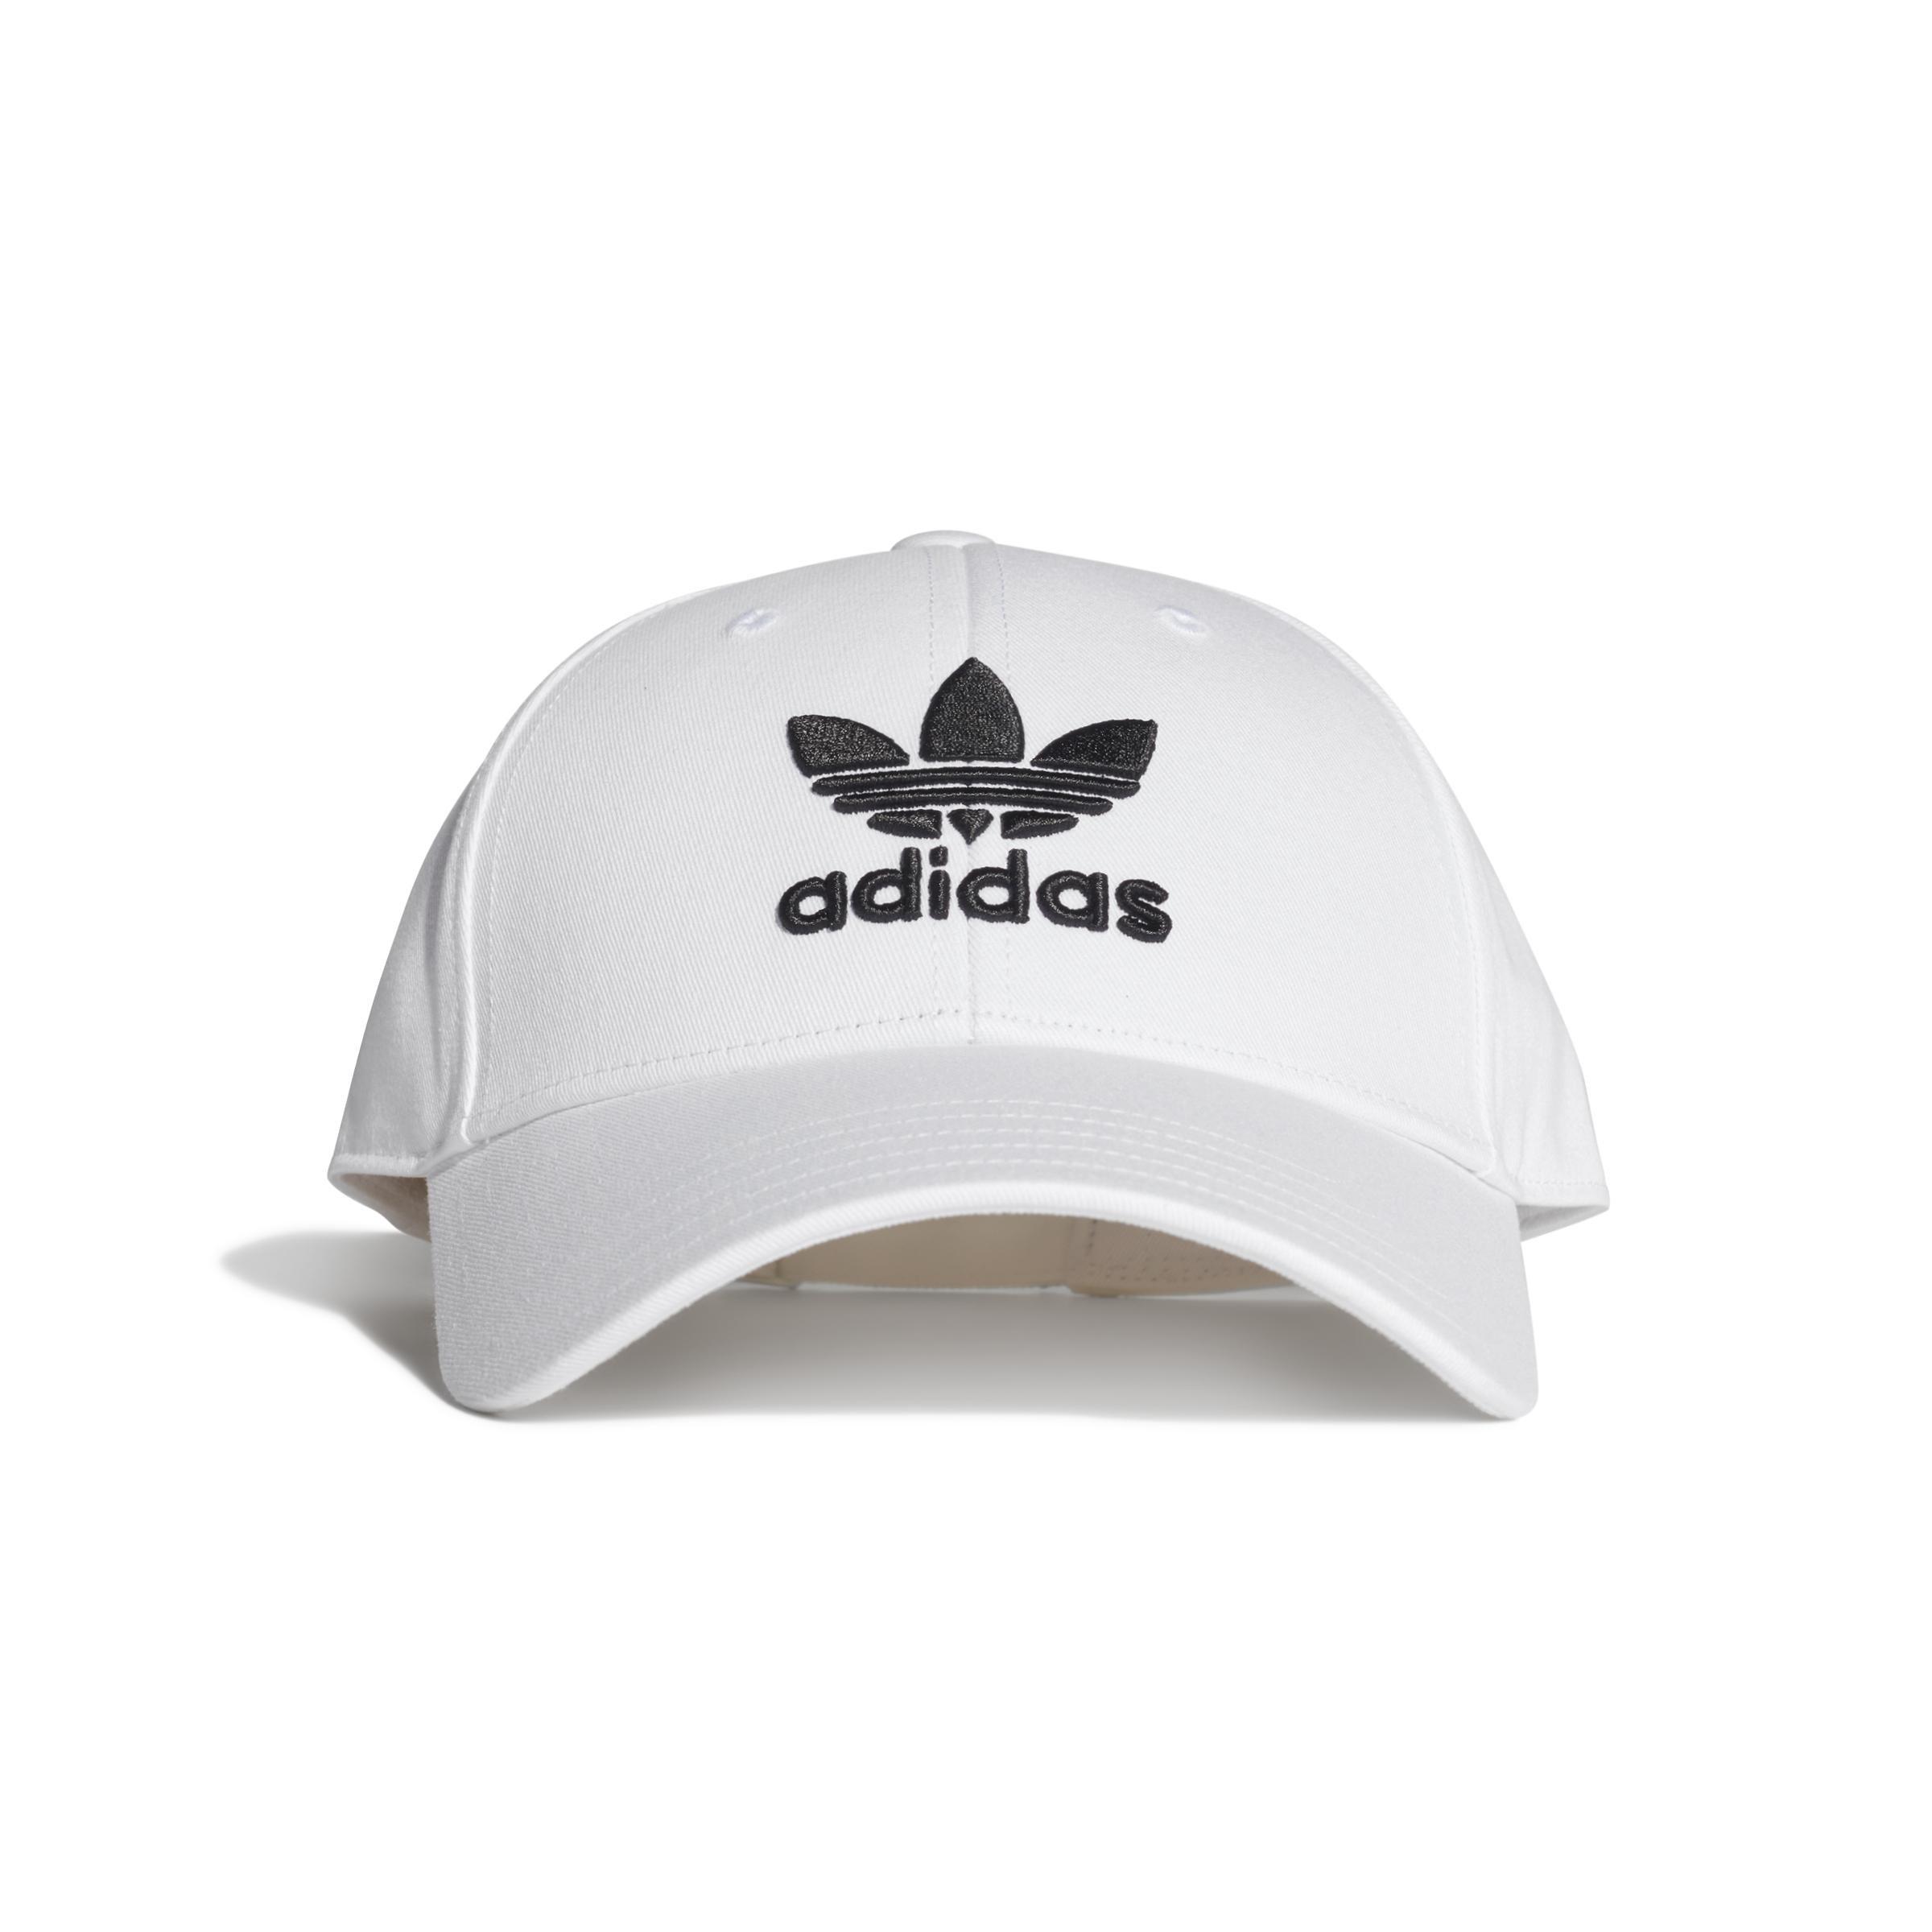 adidas - Unisex Trefoil Baseball Cap, White